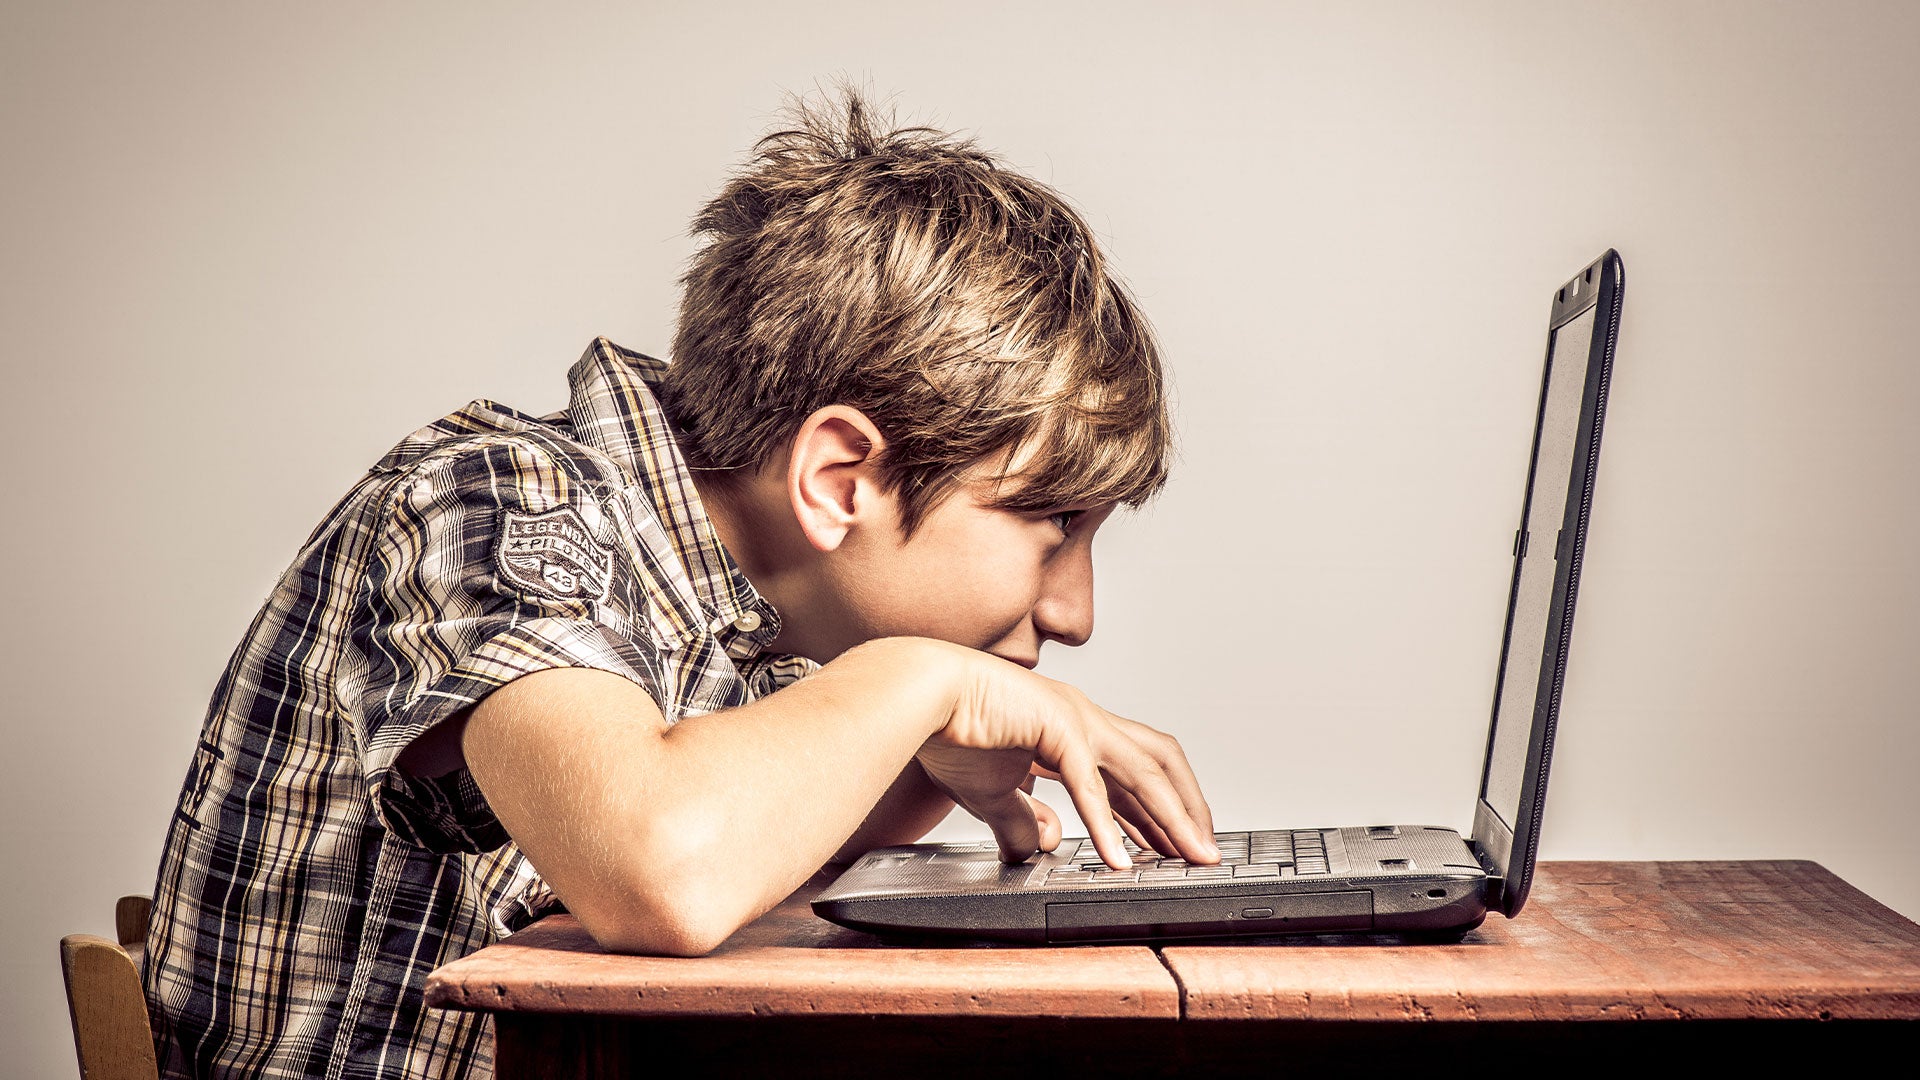 Задолго перед. Подросток за компьютером. Игровая зависимость от компьютерных игр. Ребенок за компьютером. Мальчик сидит за компьютером.